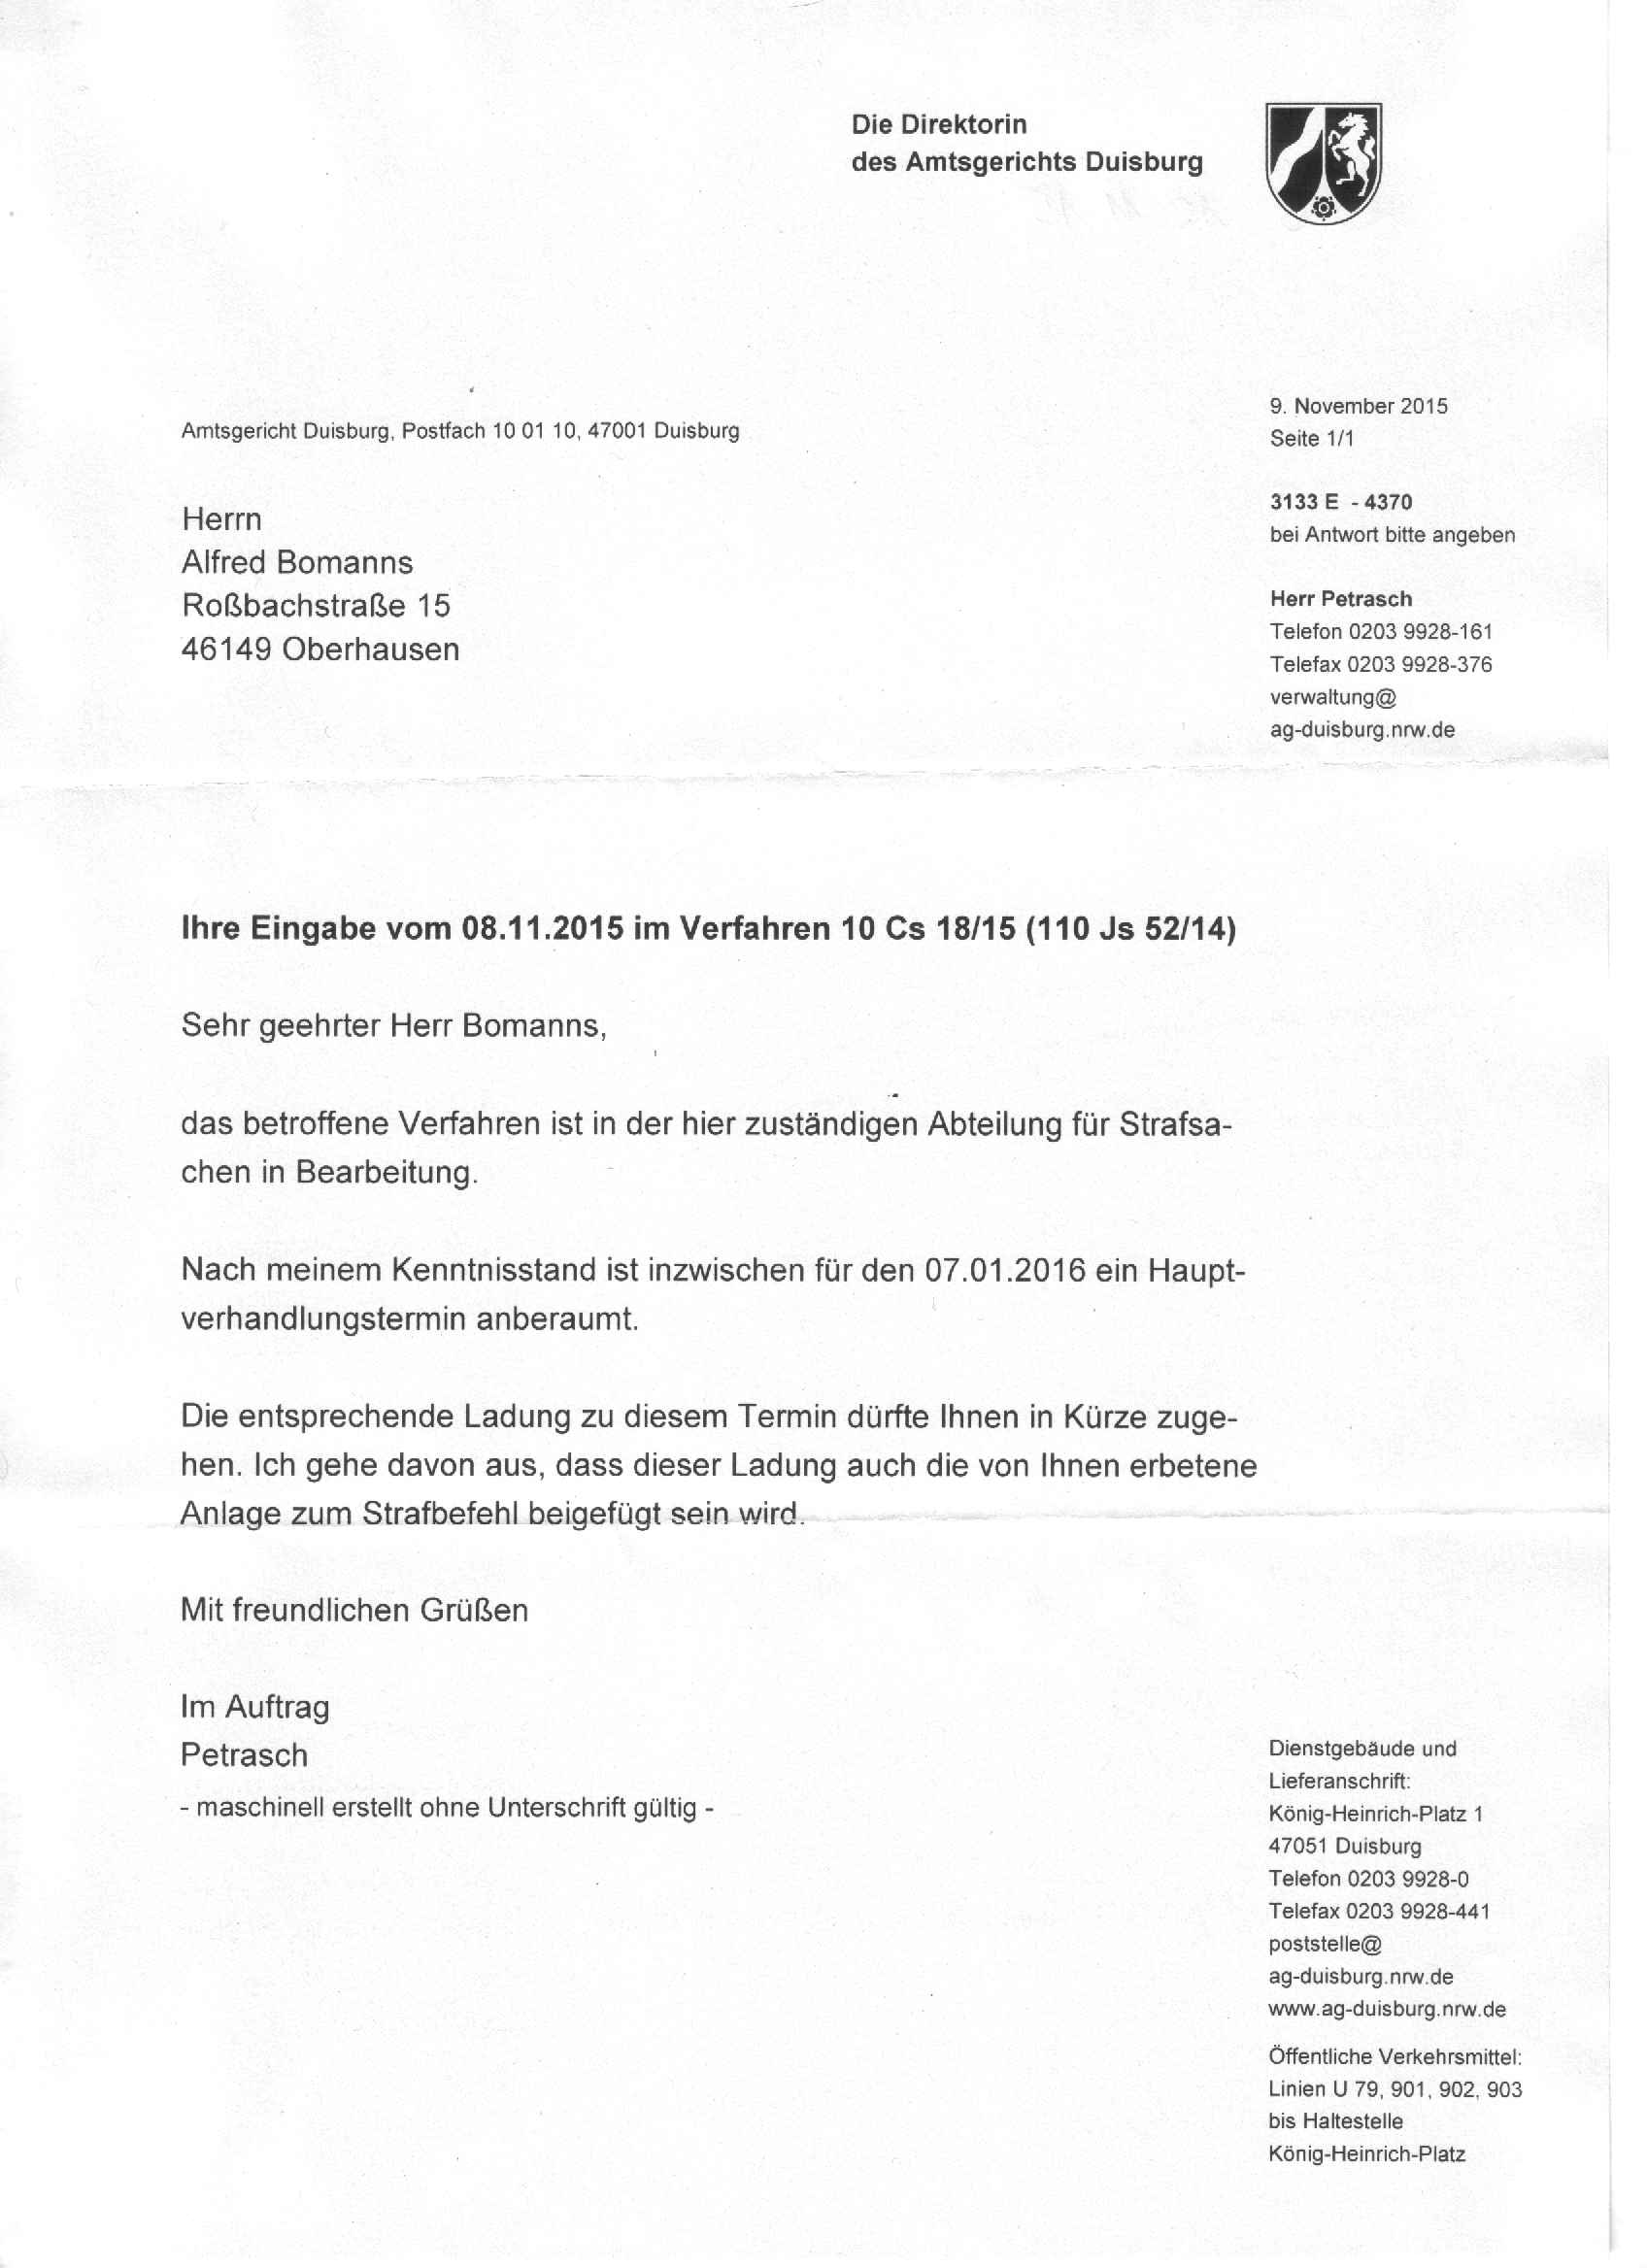 Antwort der Direktorin des Amtsgerichts Duisburg, Renate Nabbefeld-Kaiser, vom 09.11.2015